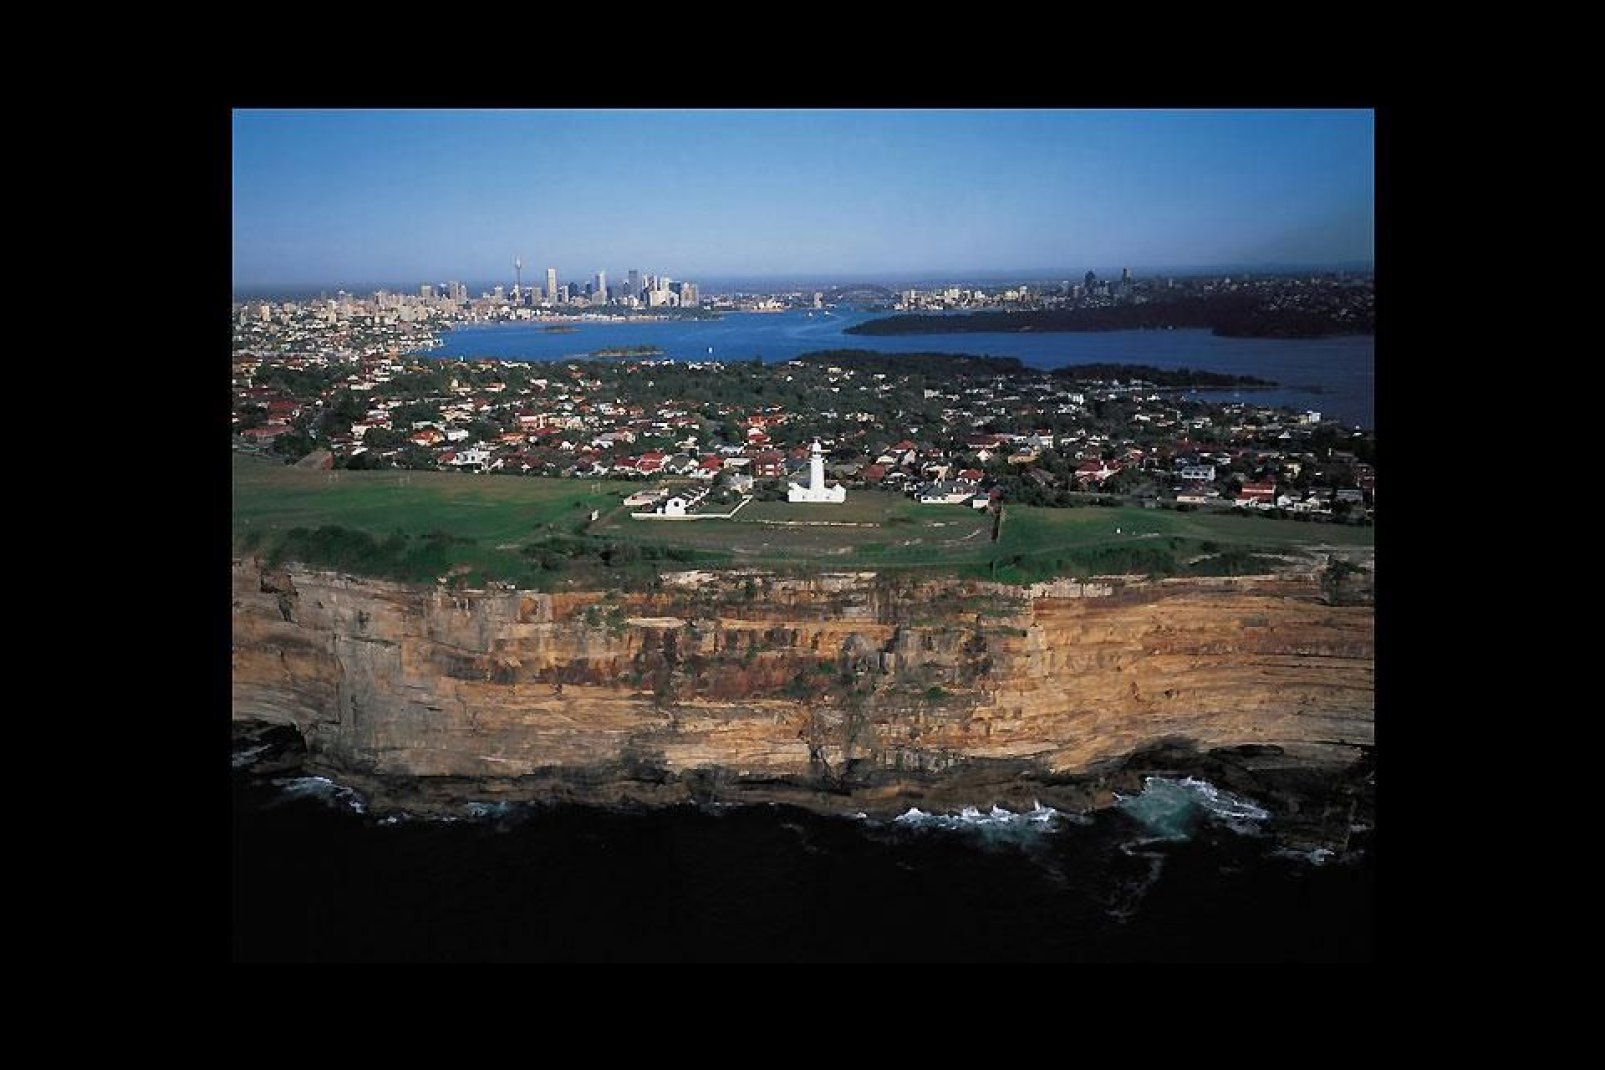 La ville de Sydney réunit deux régions : la plaine de Cumberland et le plateau de Hornsby.